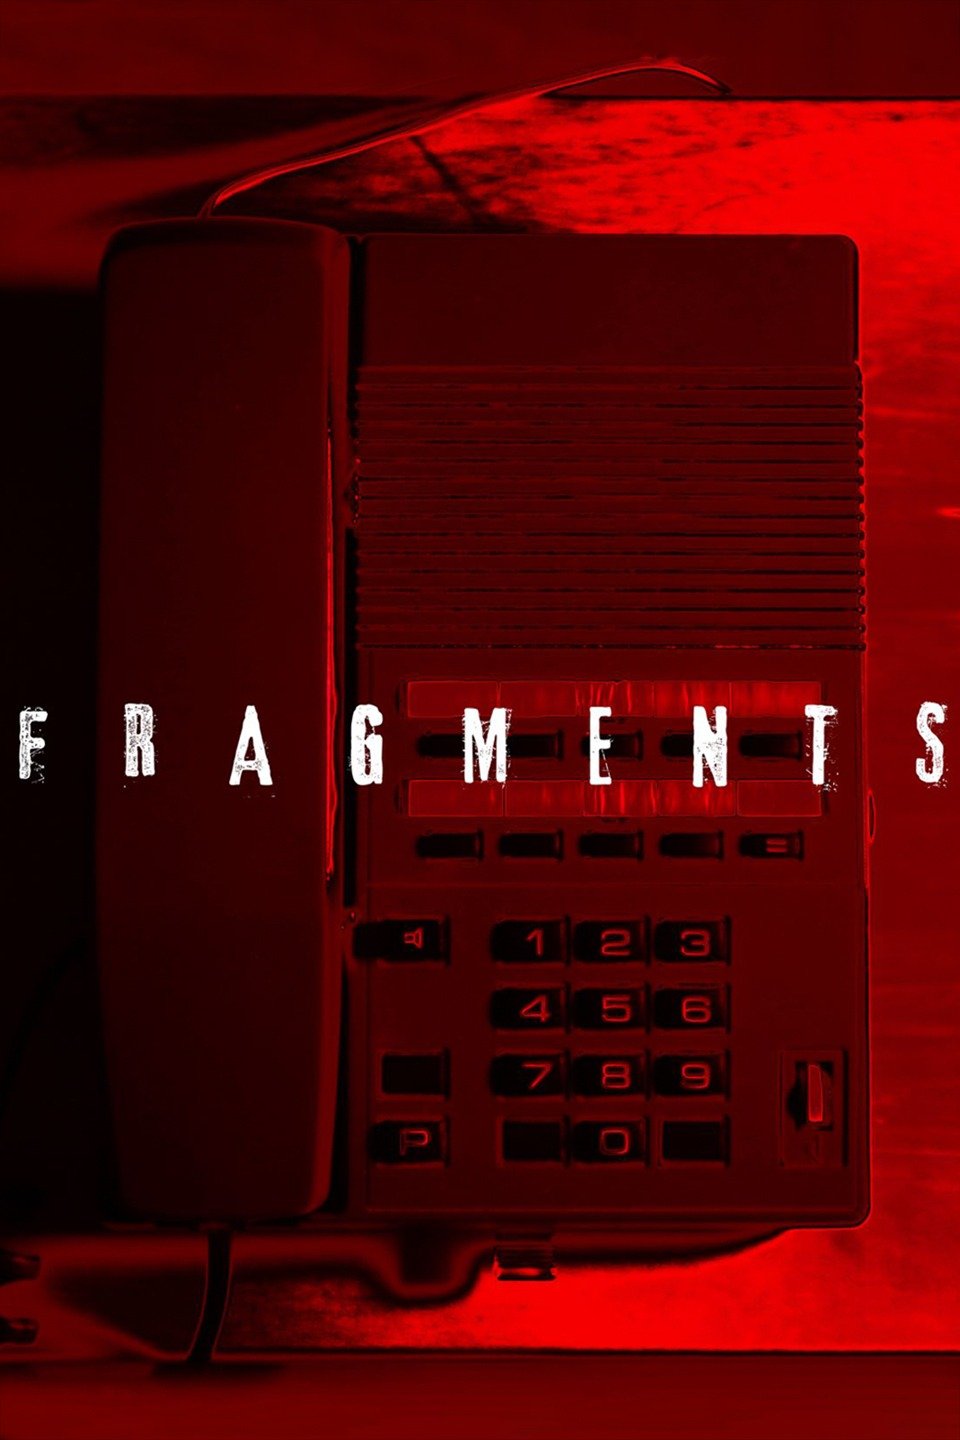 fragments movie genre